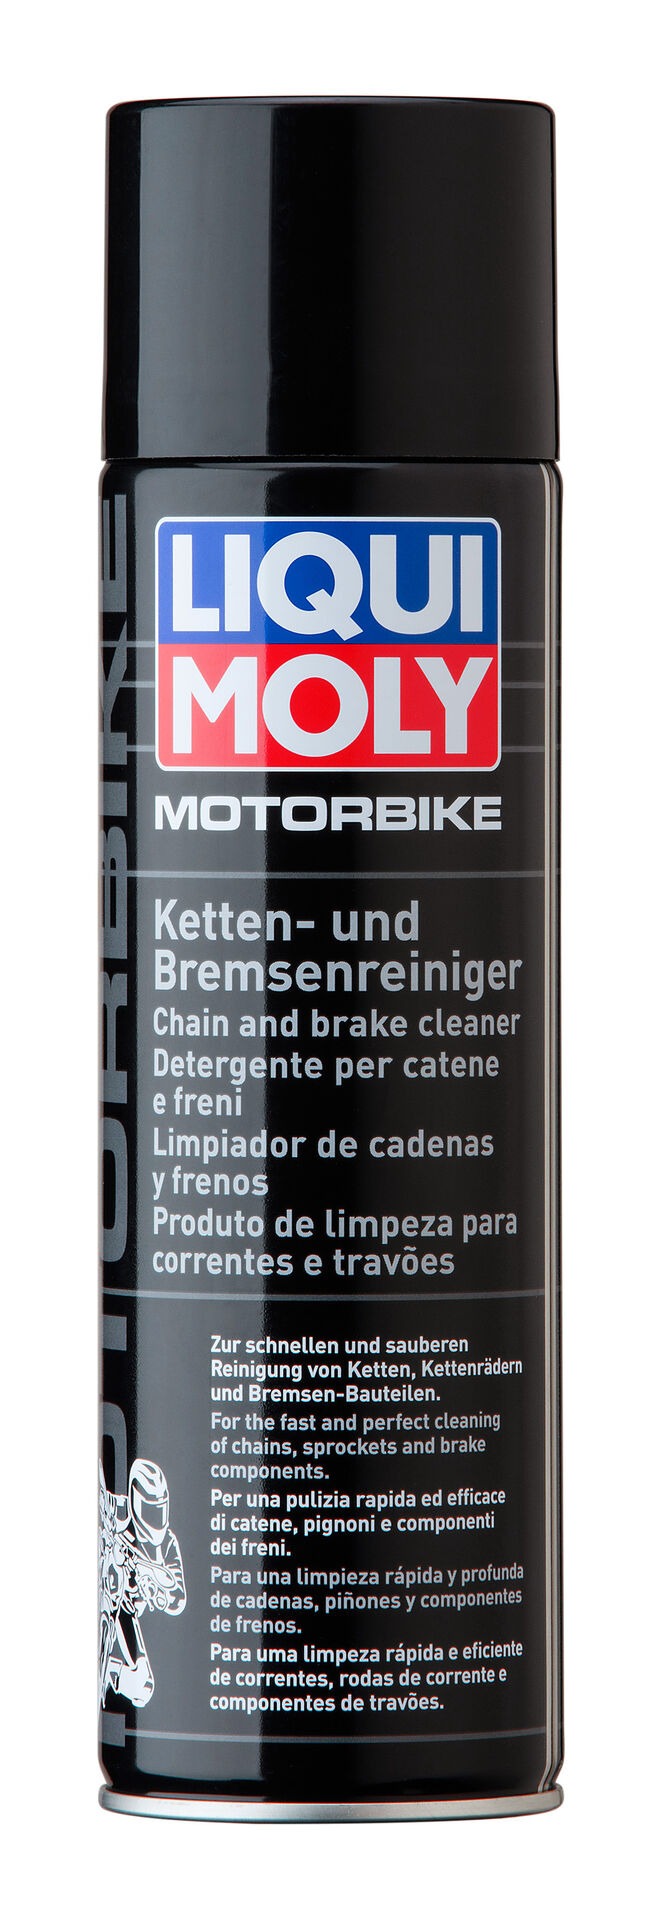 Liqui Moly Motorbike Ketten Reiniger Motorrad Racing Kettenspray 500 ml